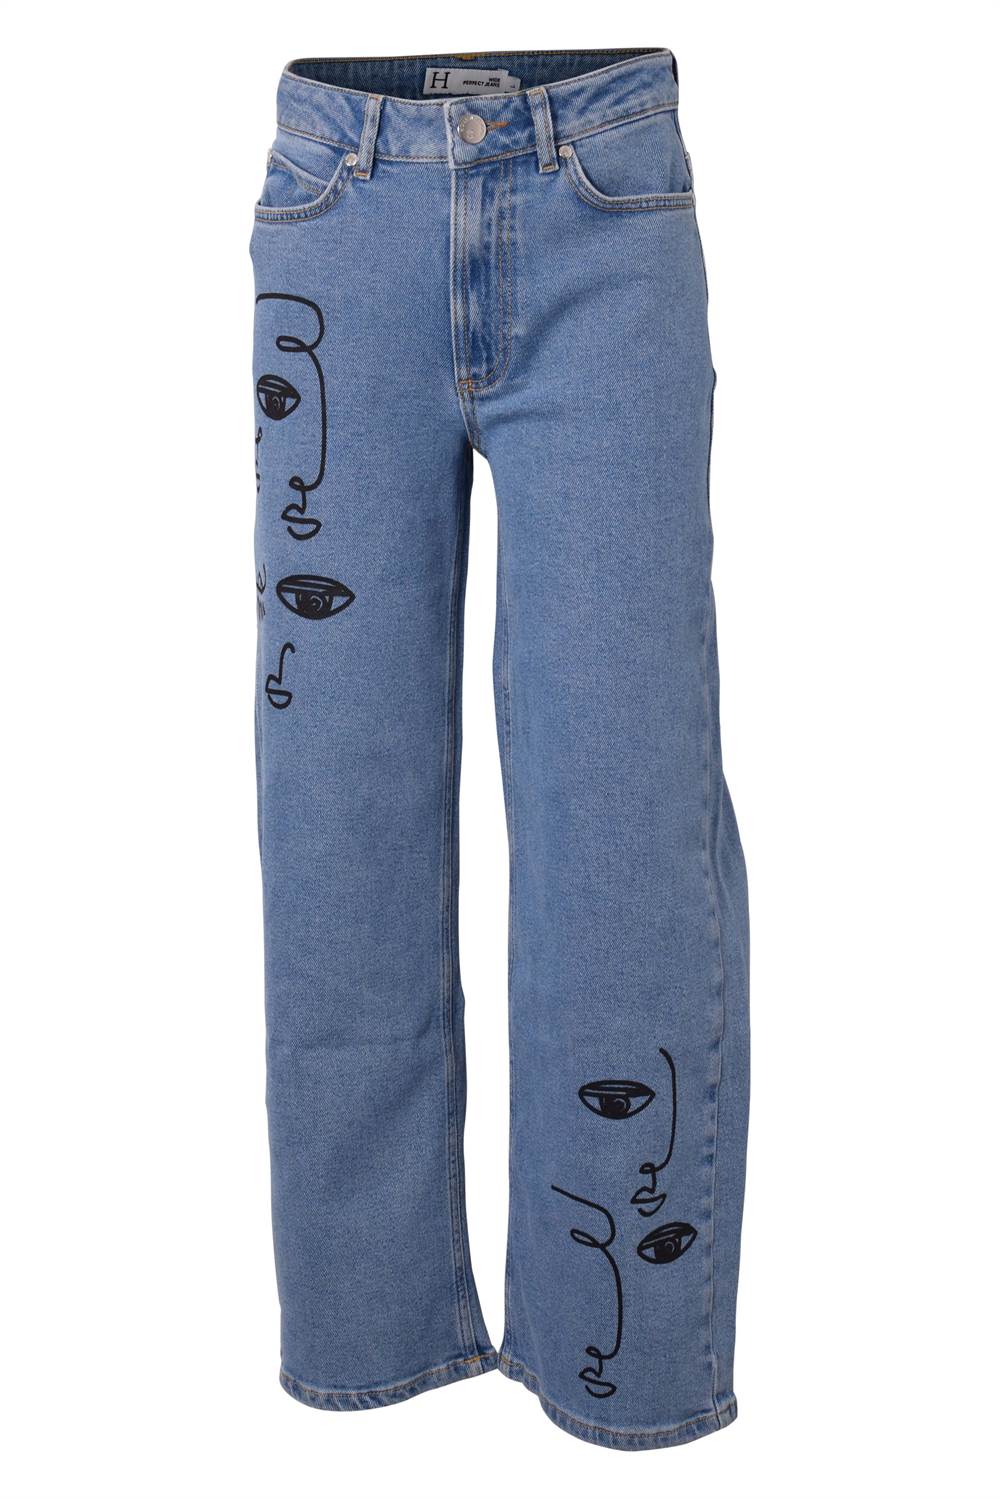 Bugsering Mange toksicitet Køb Hound jeans - wide/blå/picasso (pige)